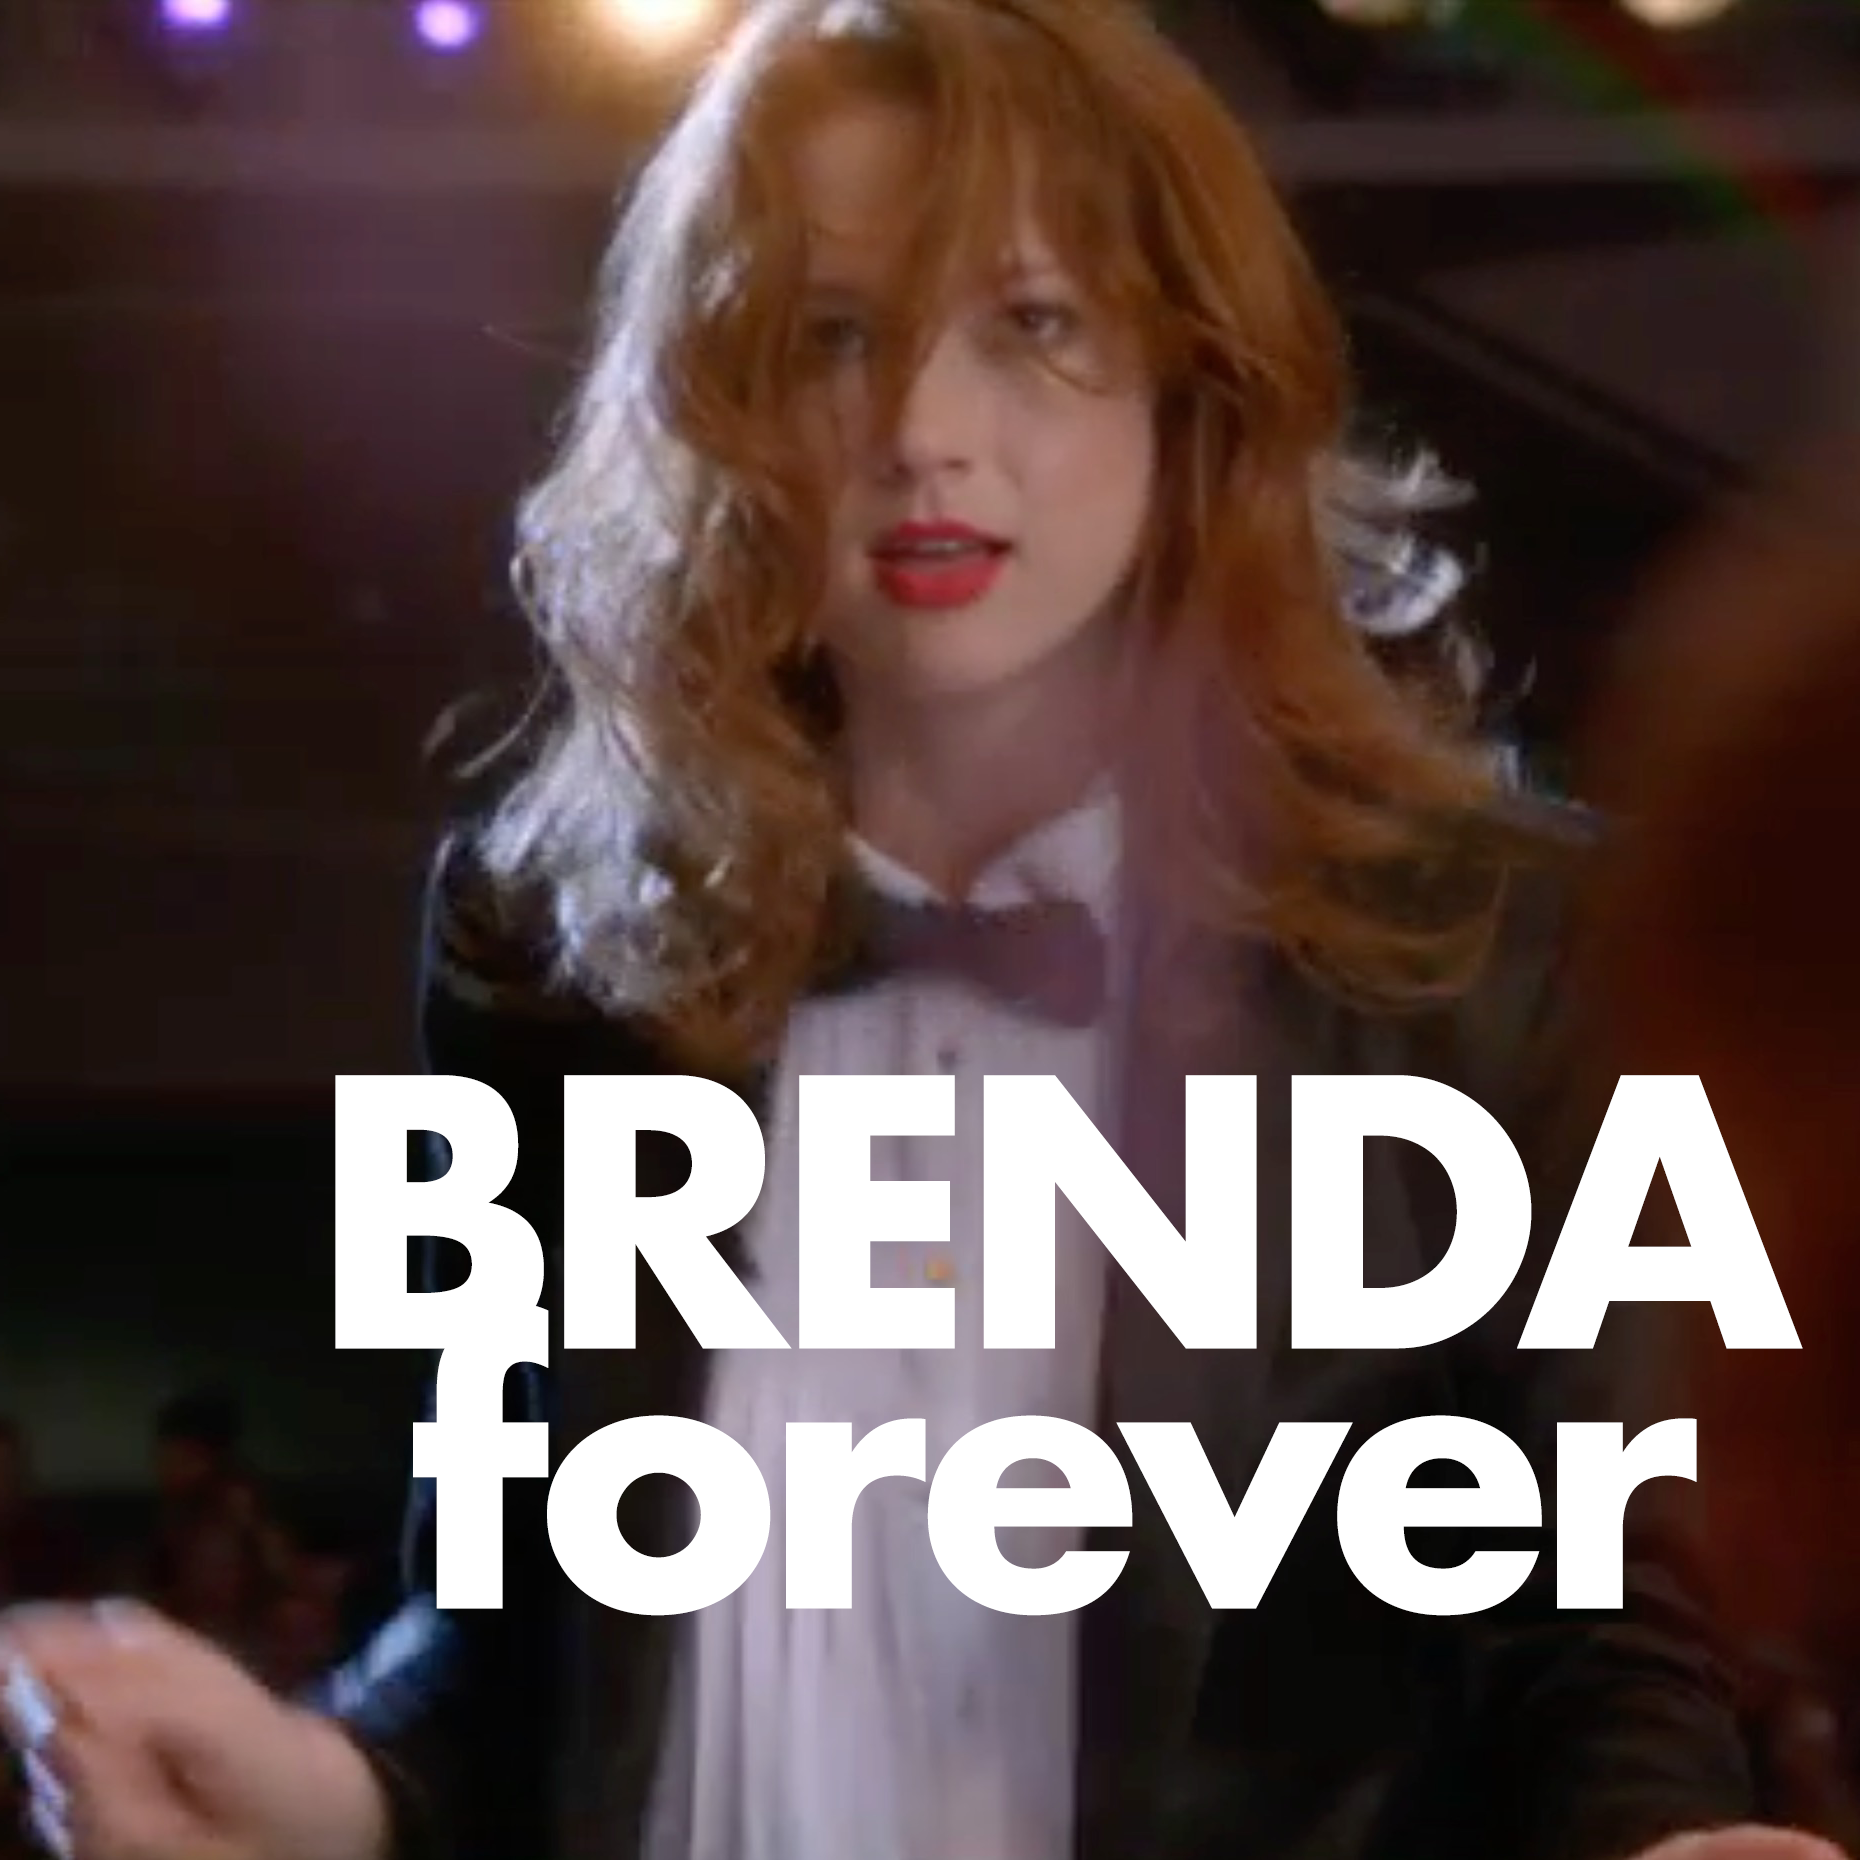 Brenda forever